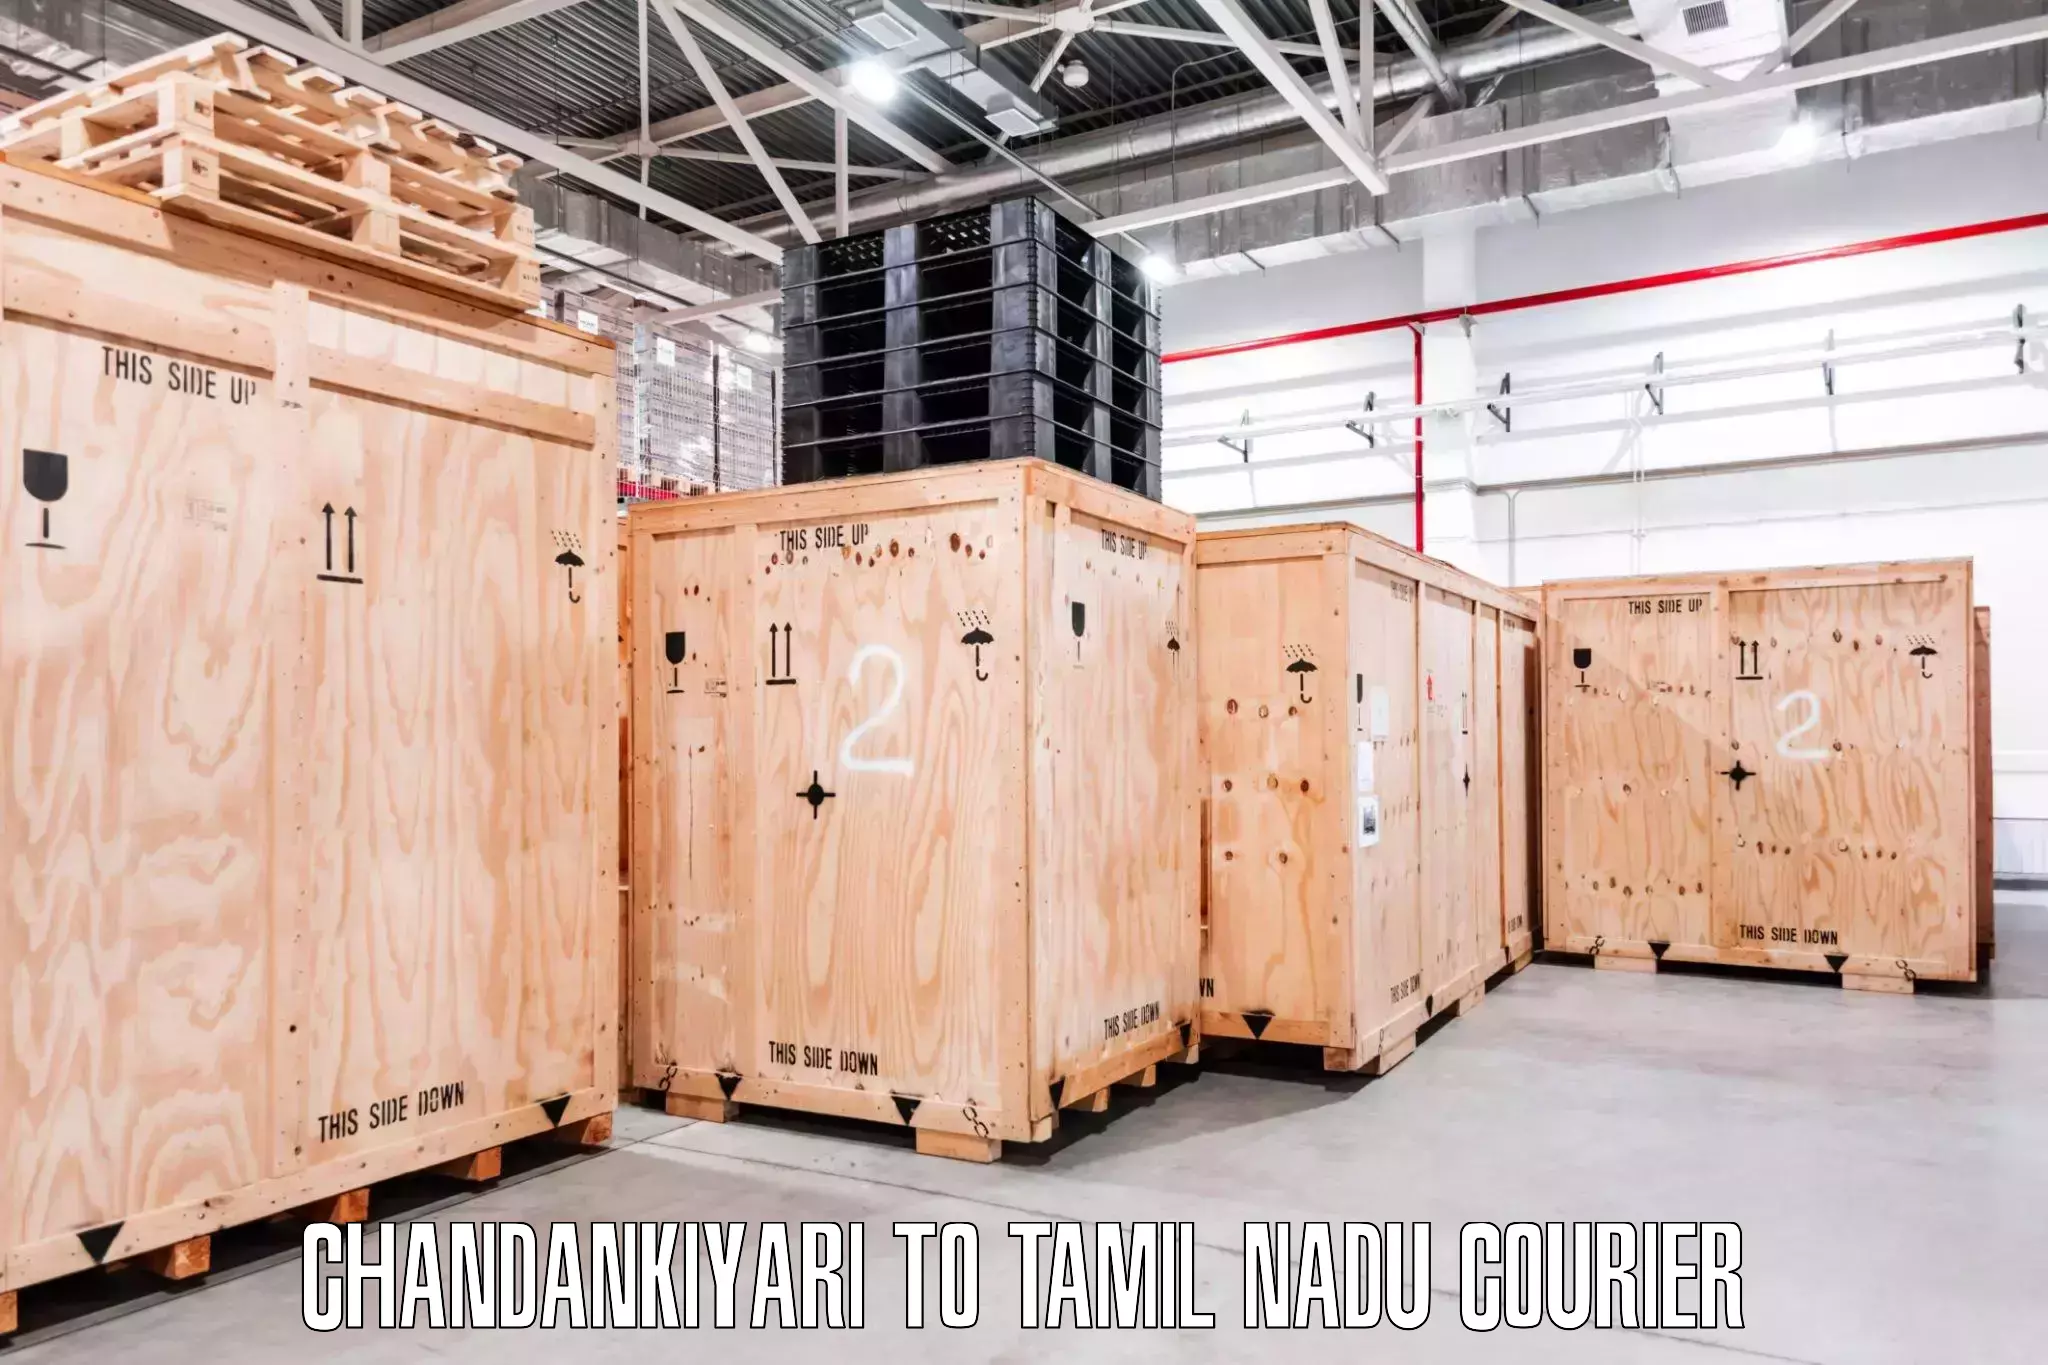 Expert furniture movers Chandankiyari to Viralimalai